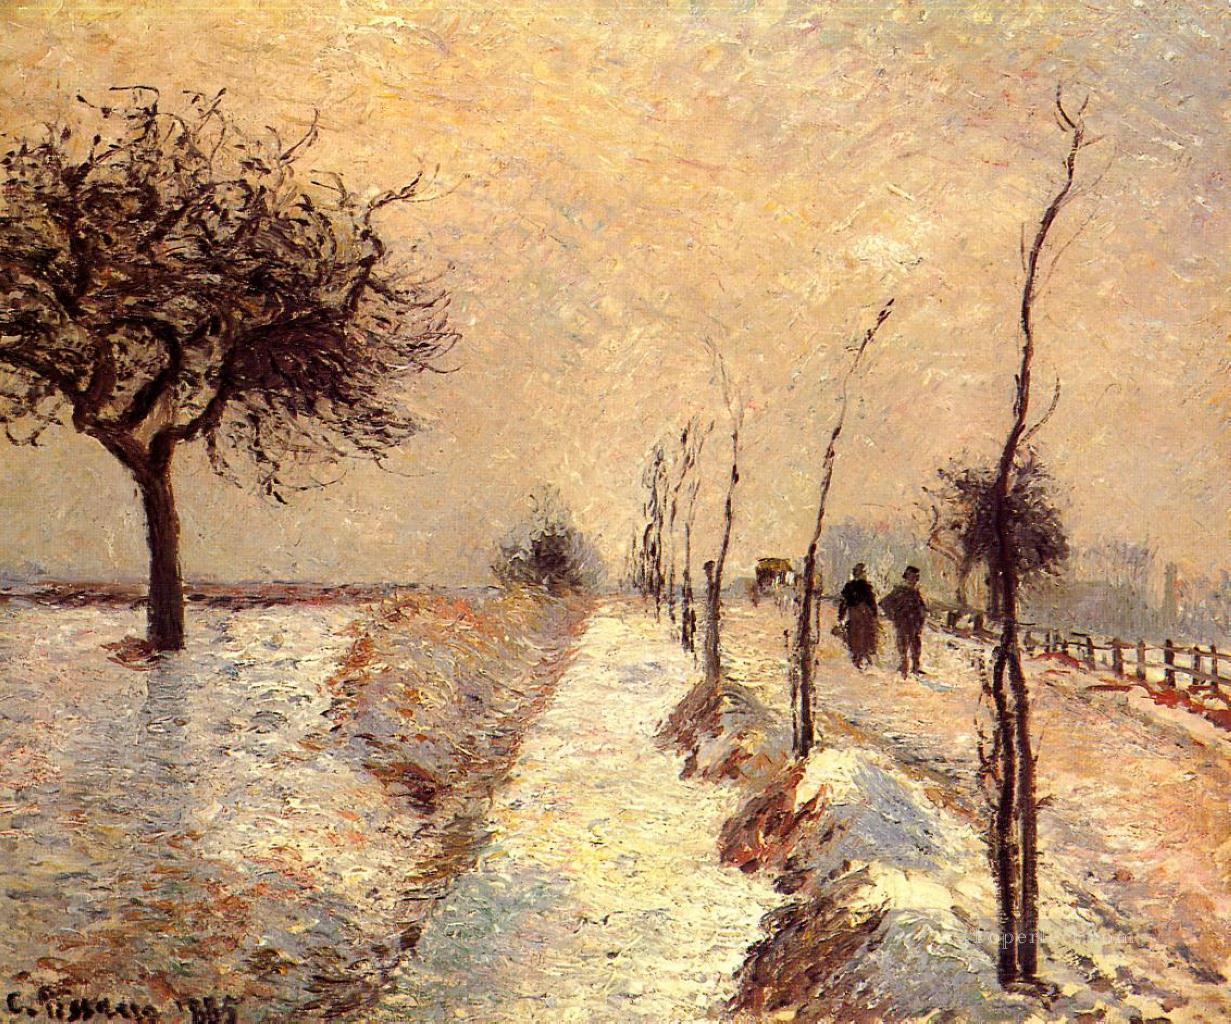 エラニー冬の道路 1885年 カミーユ・ピサロ油絵